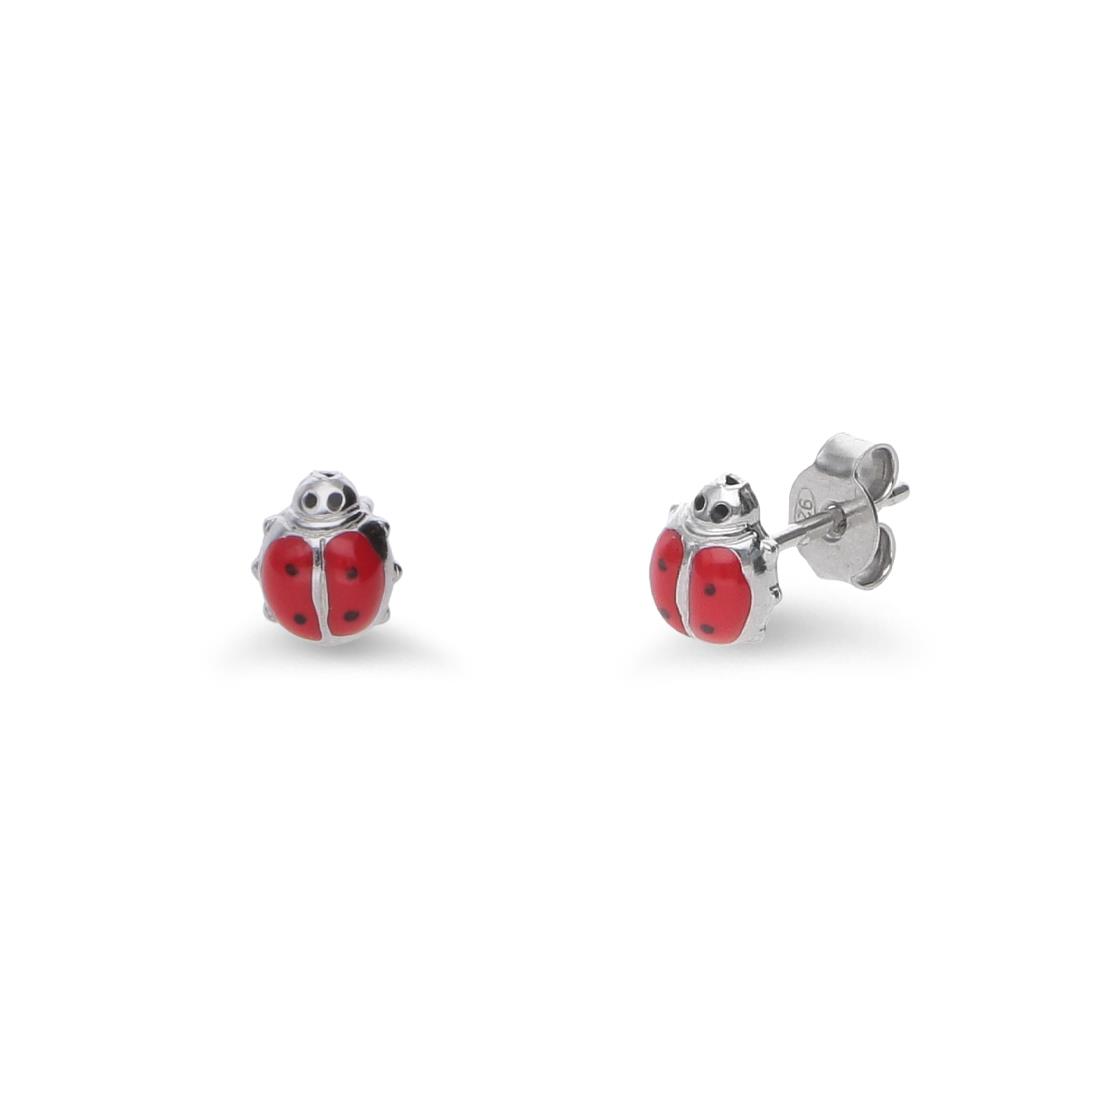 Ladybug earrings for girls - ORO&CO 925